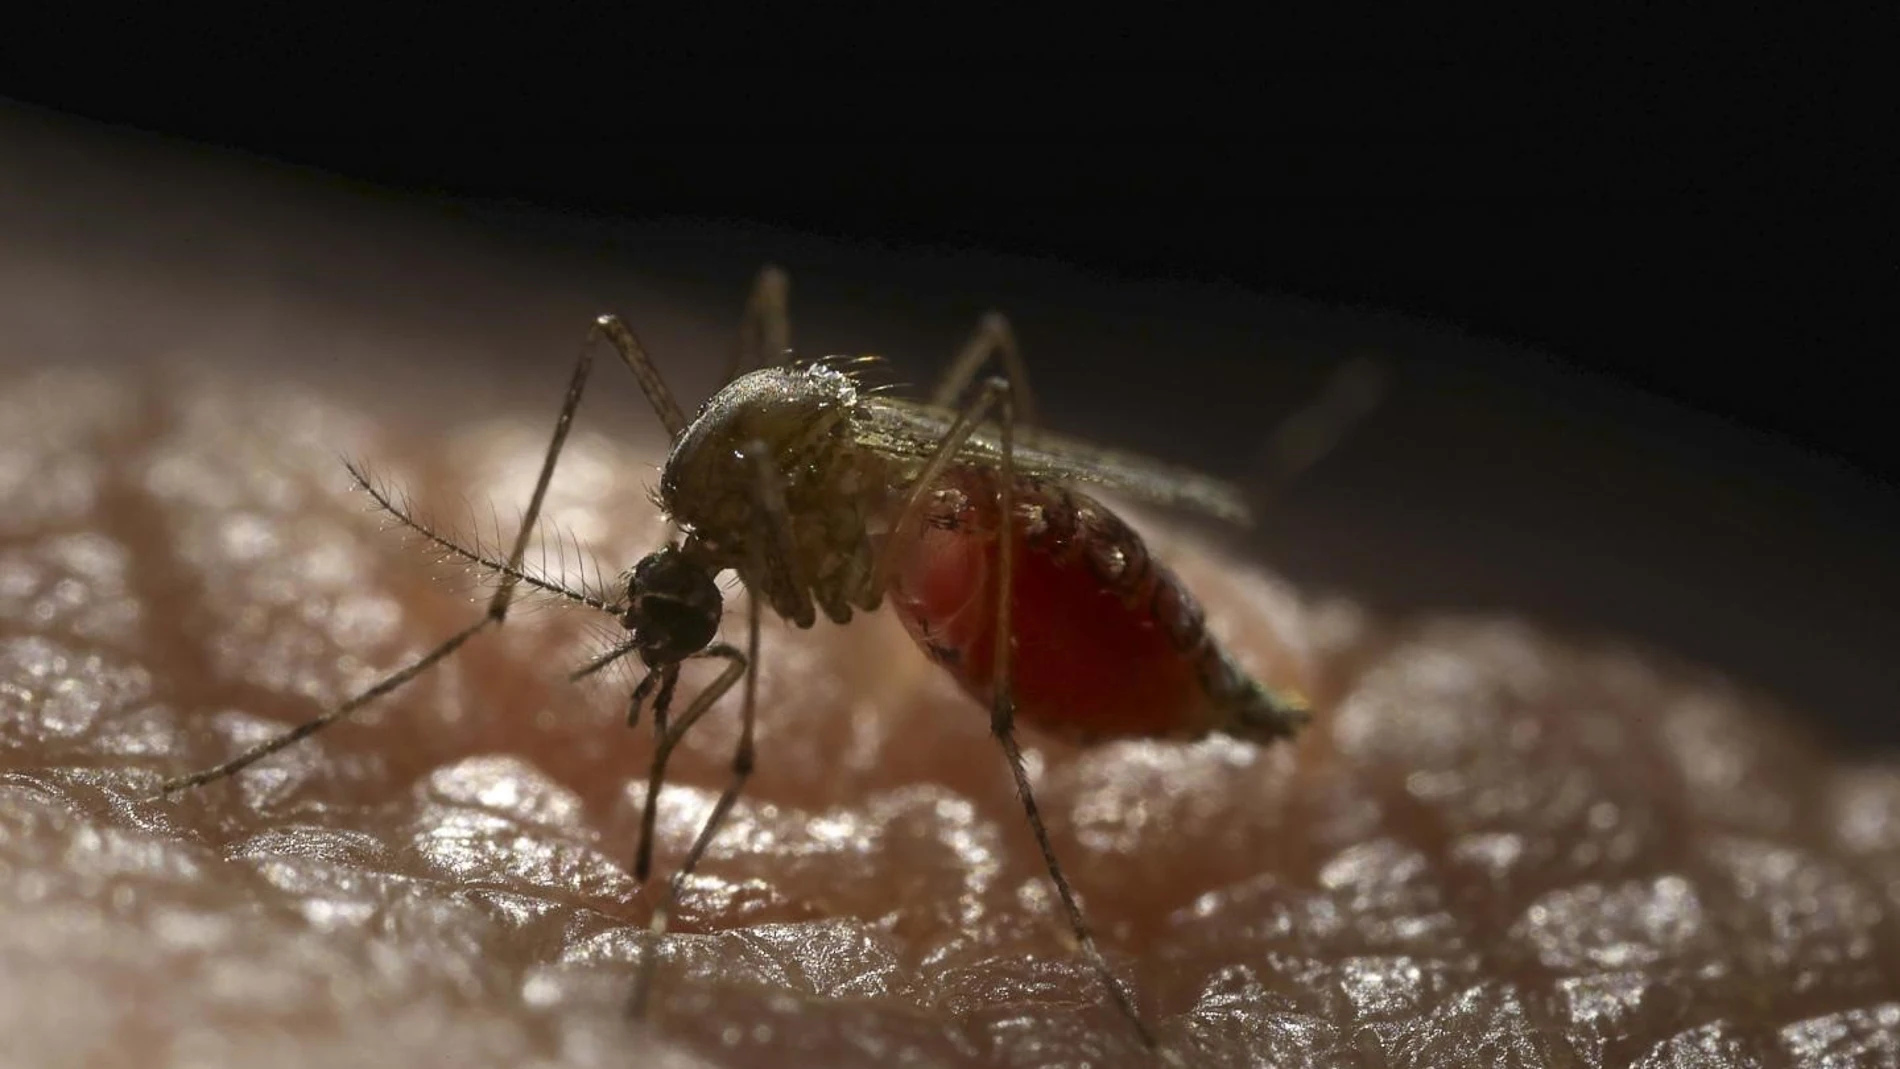 EE.UU.- Diseñan mosquitos para repeler el virus del dengue y otras enfermedades infecciosas generalizadas